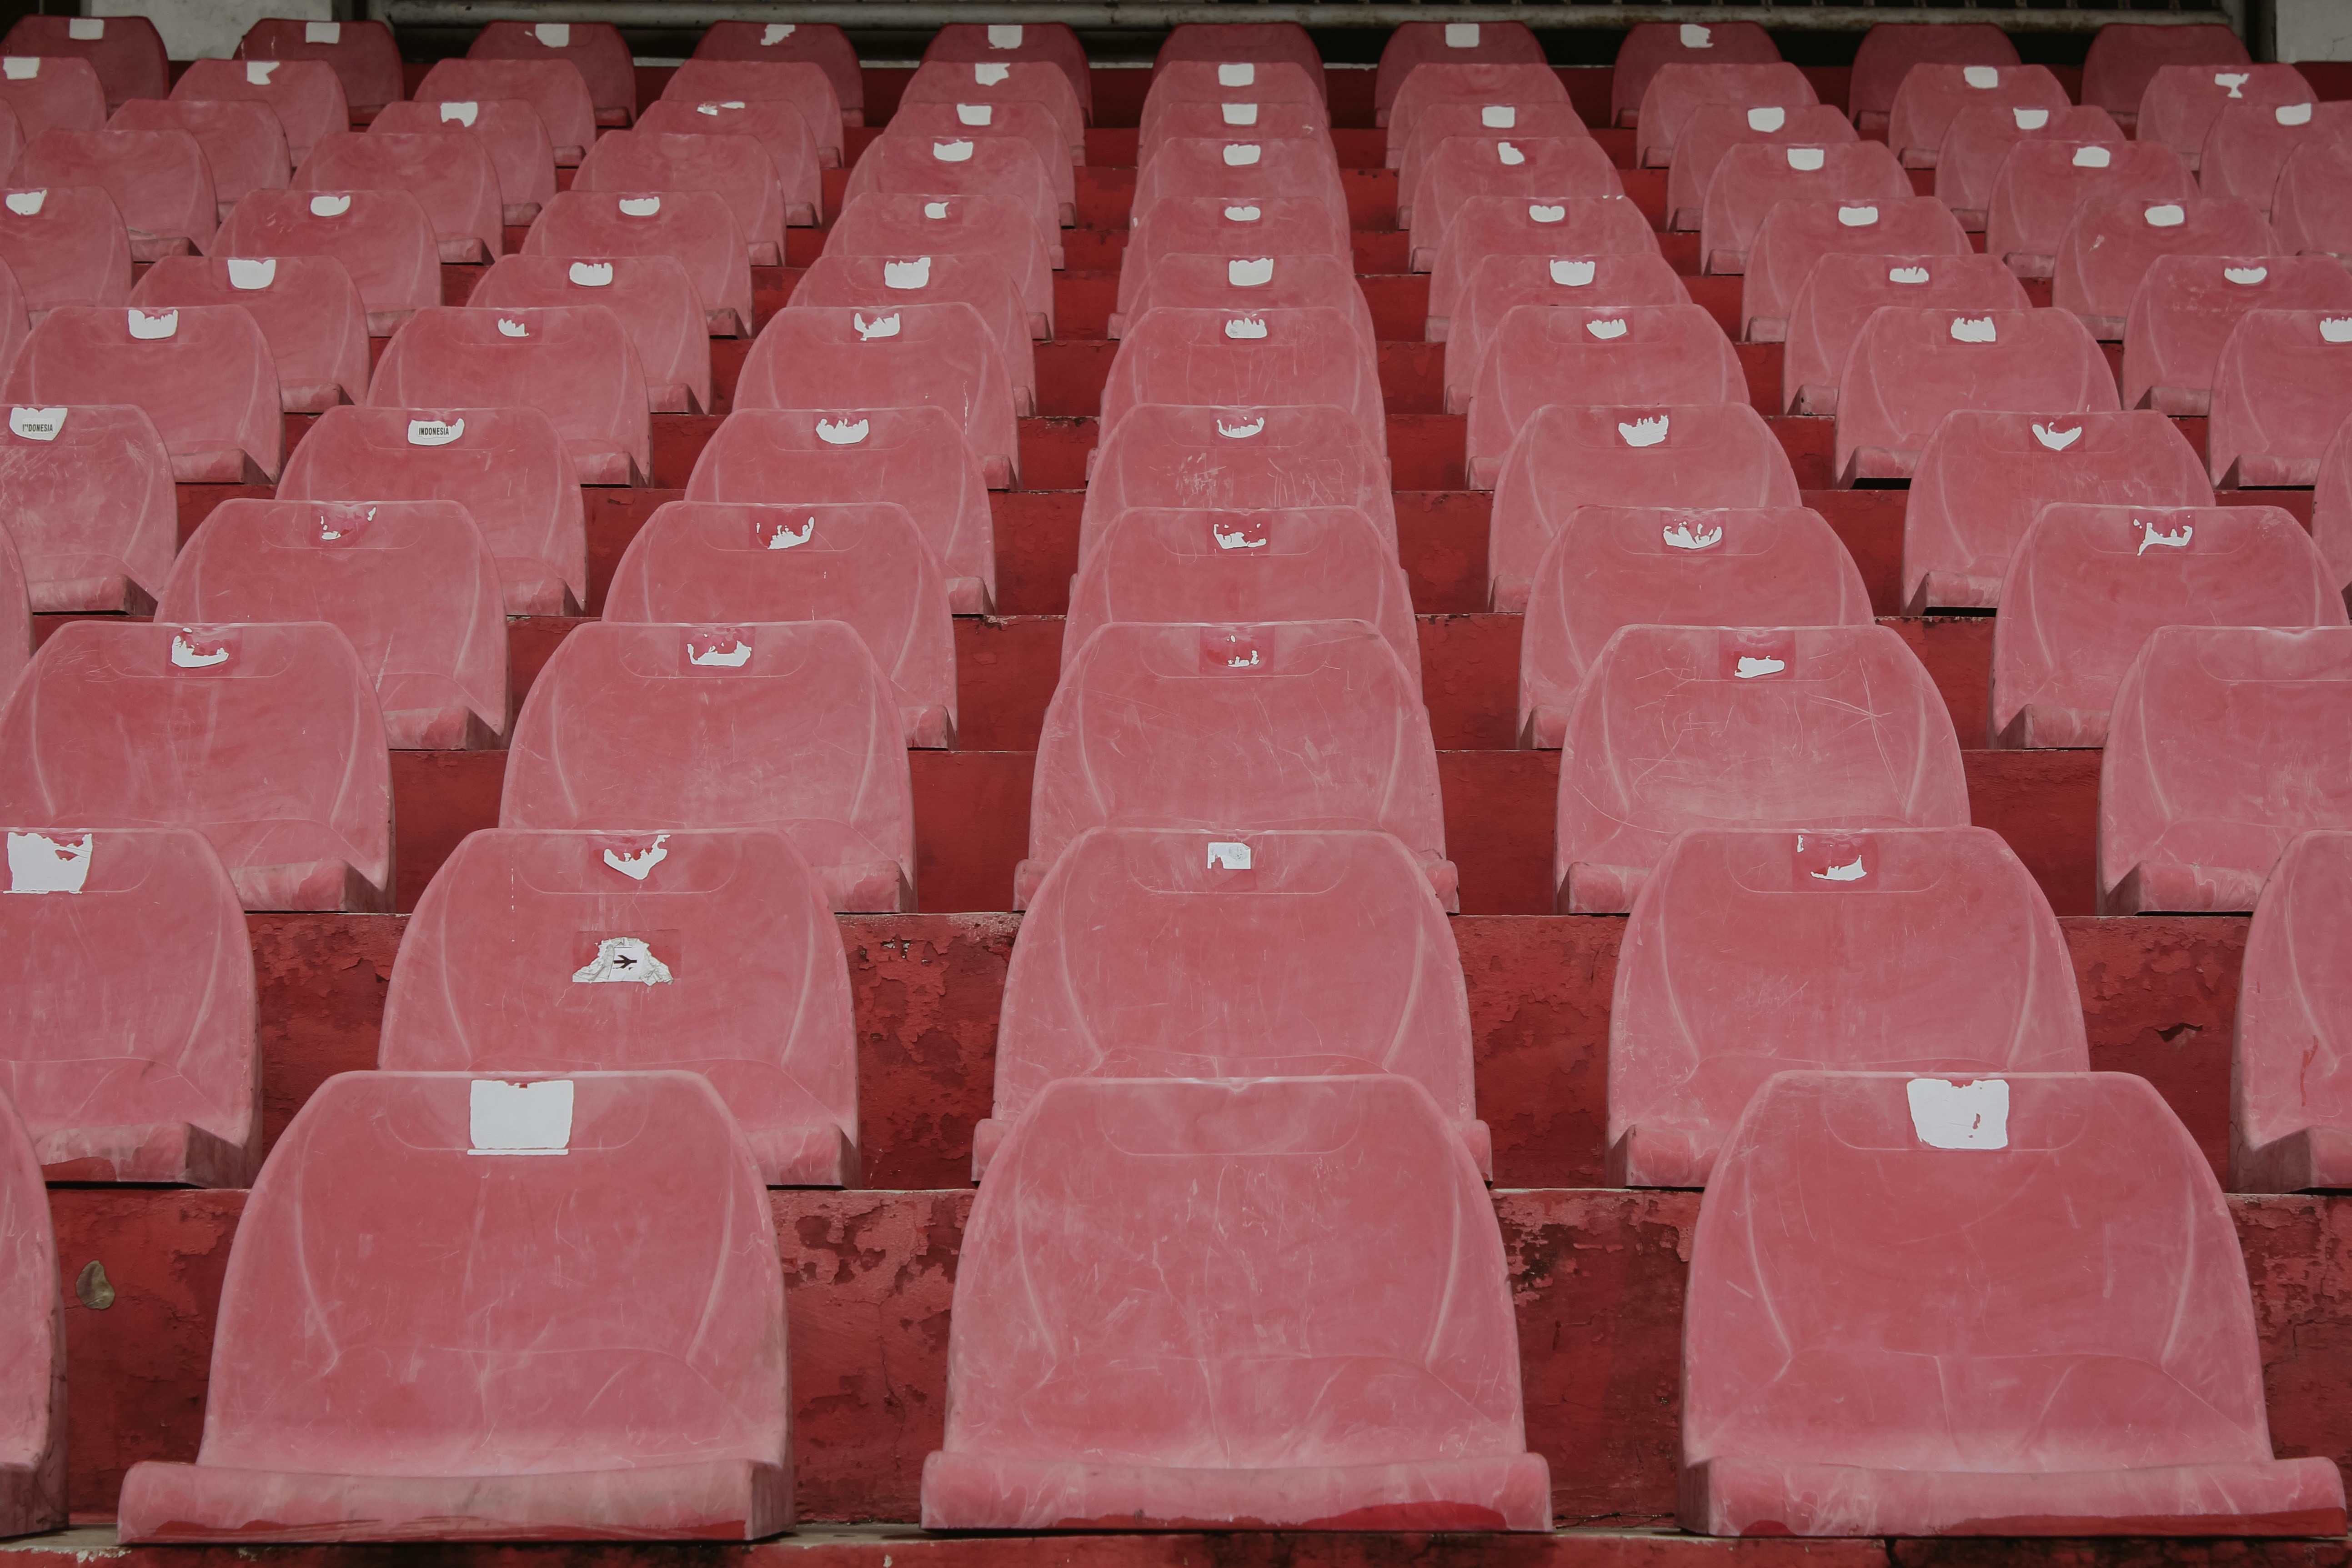 rows of plastic stadium seats